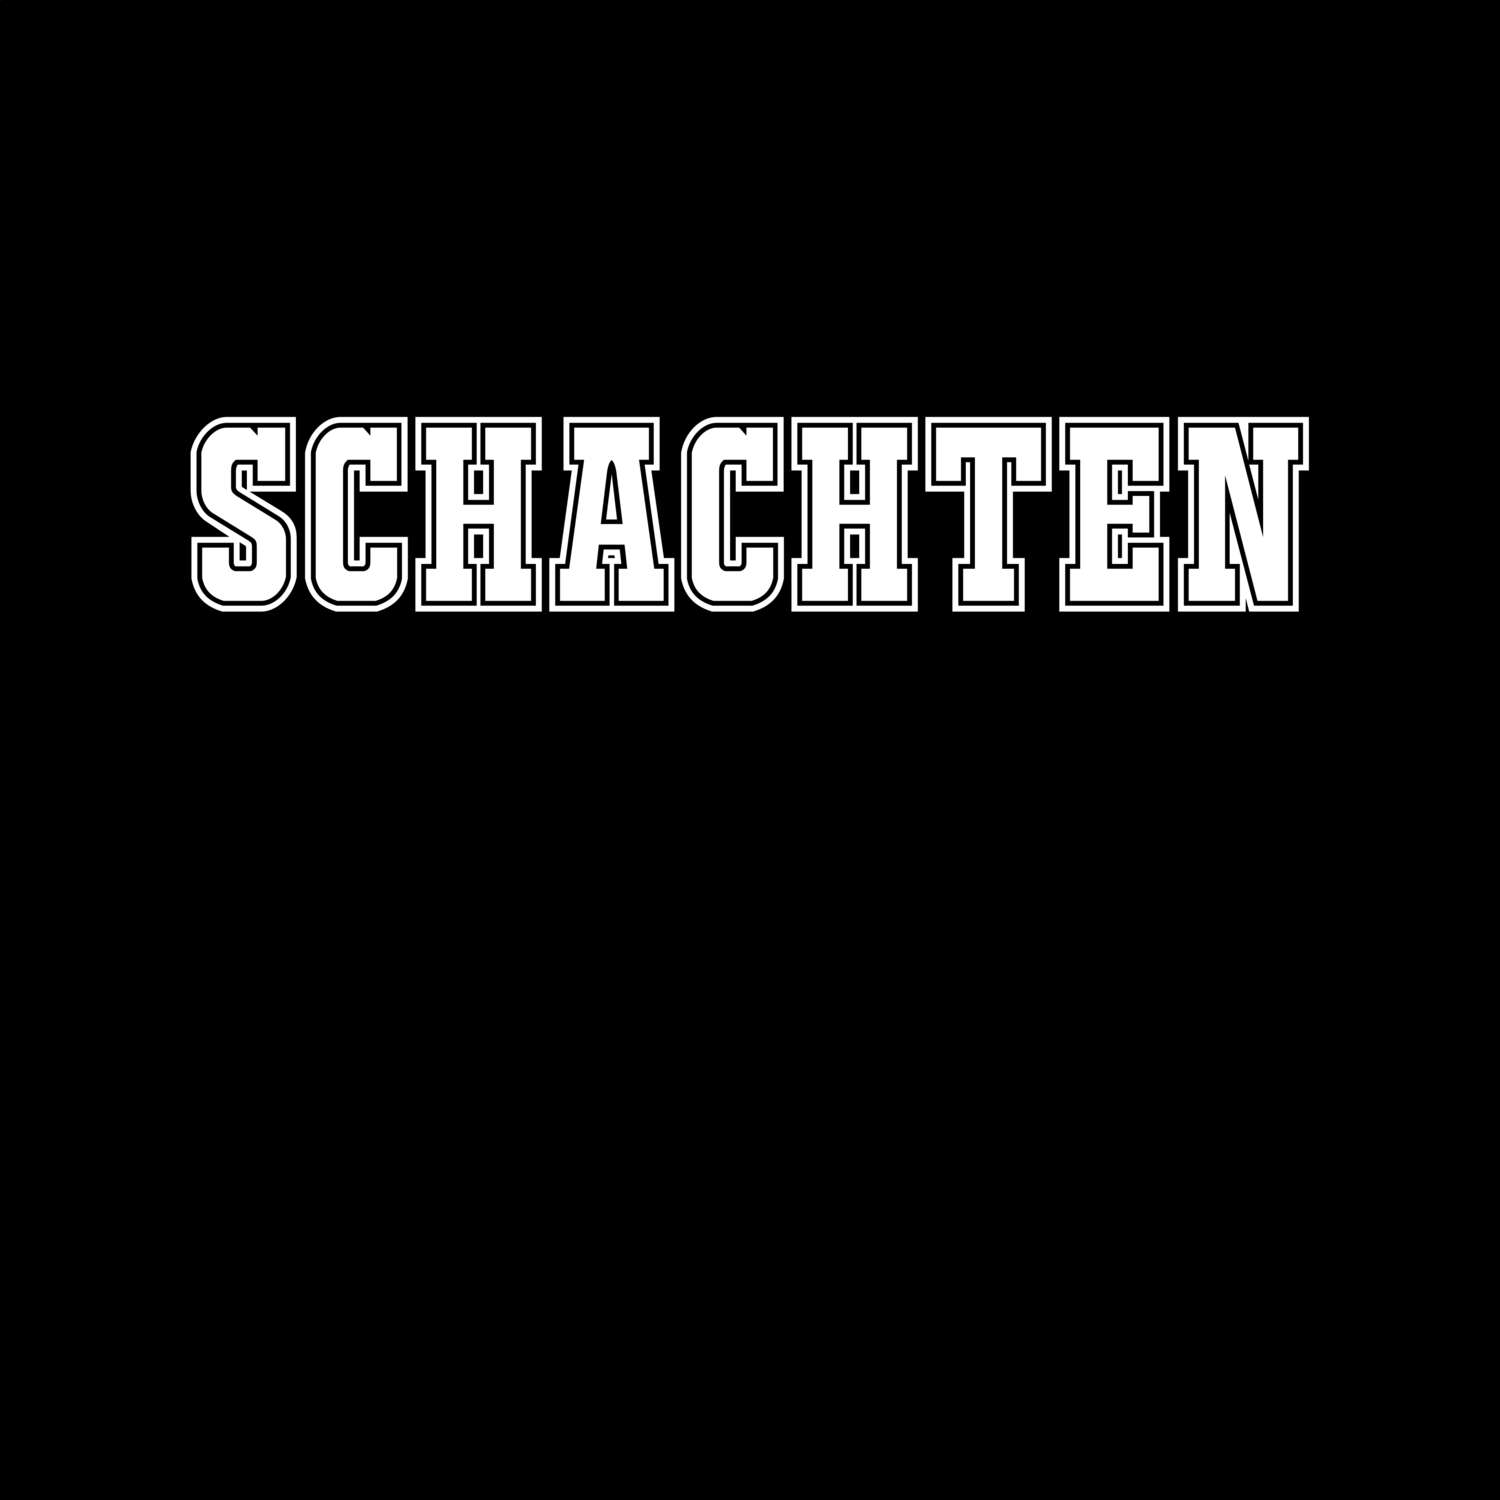 Schachten T-Shirt »Classic«